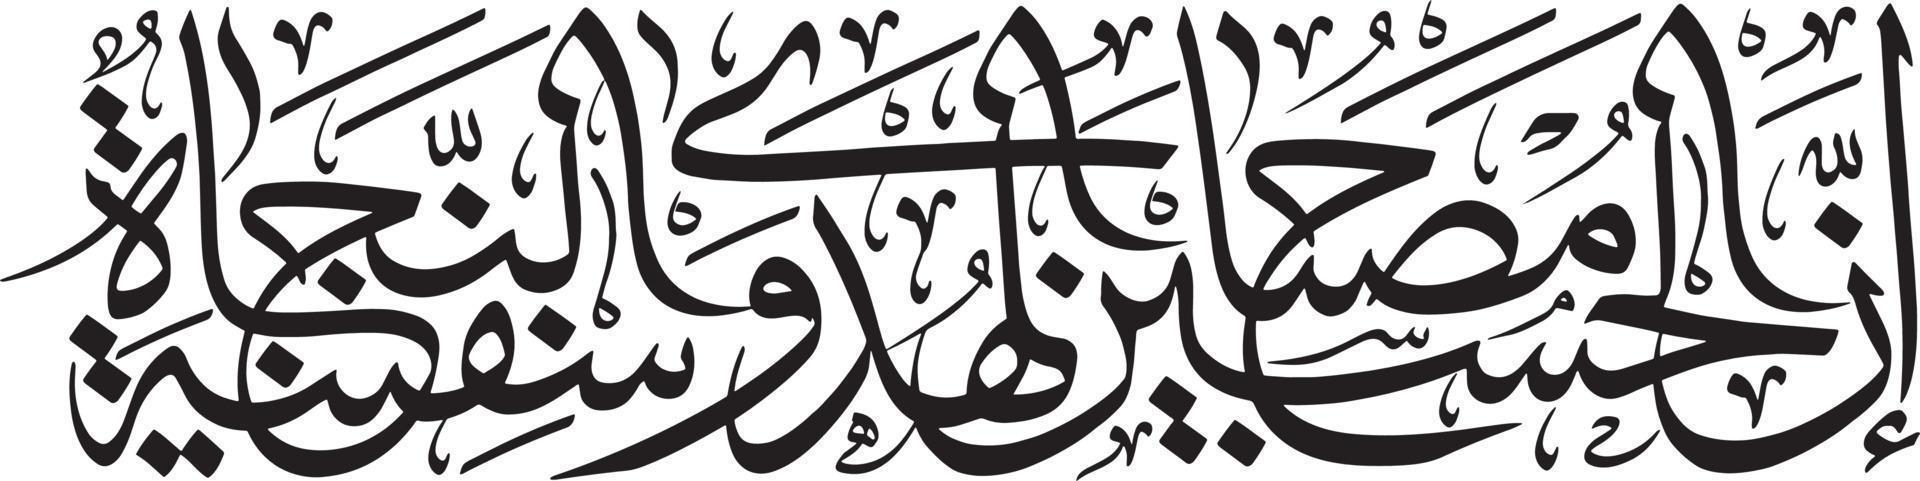 vecteur libre de calligraphie islamique arbi